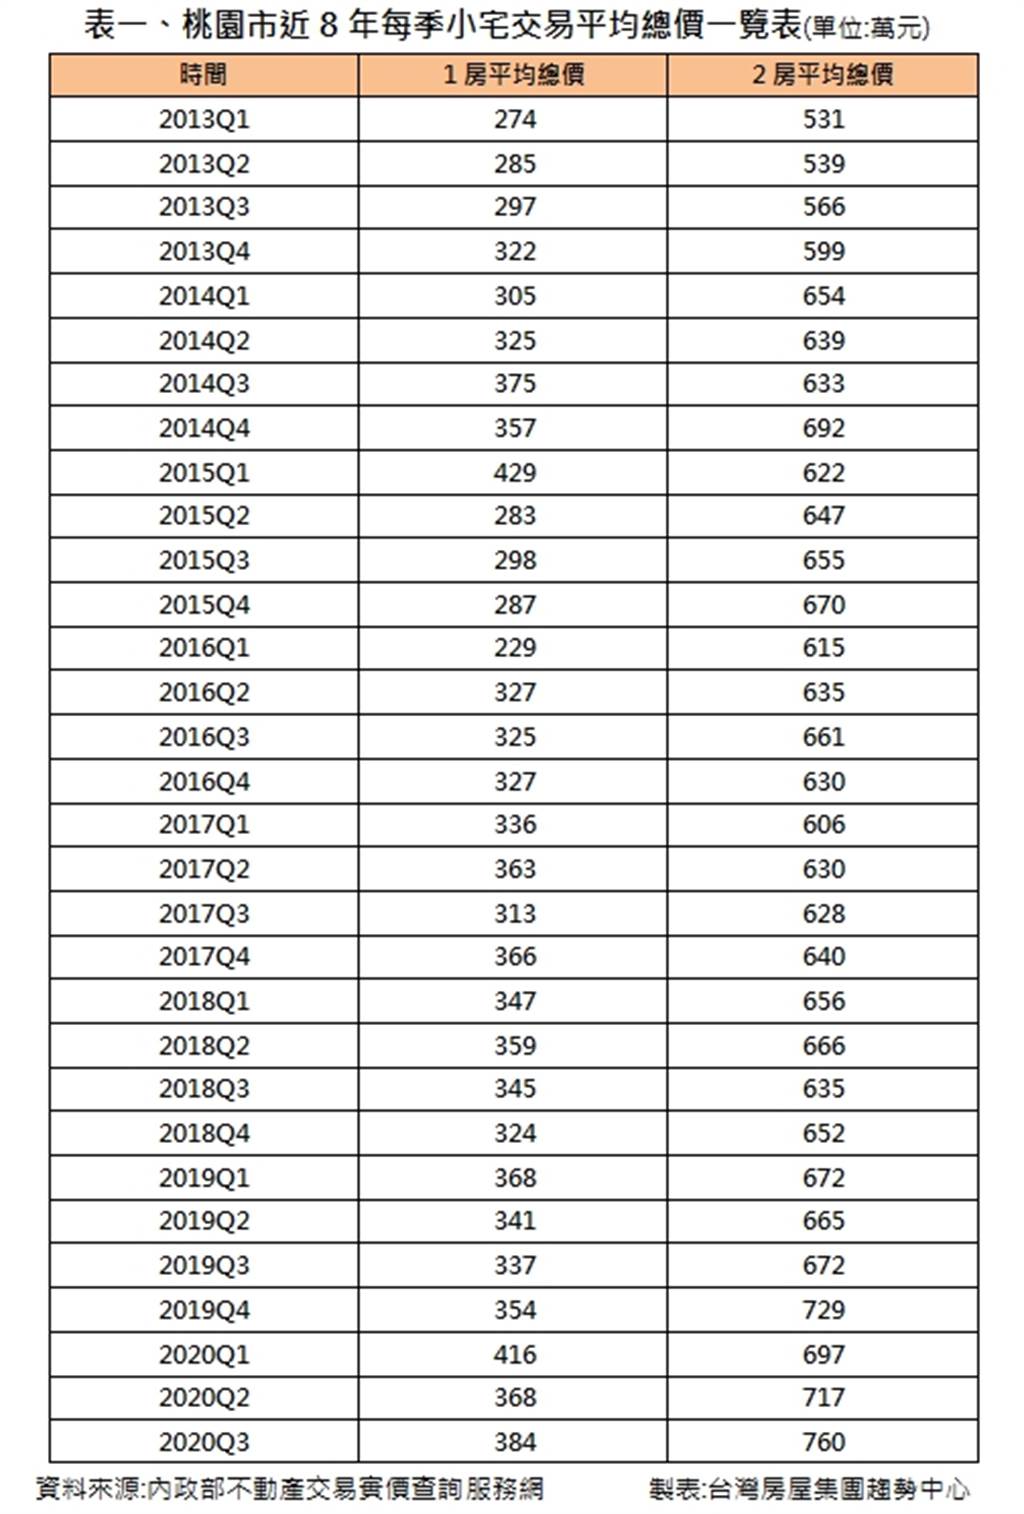 表一、桃園市近8年每季小宅交易平均總價一覽表(單位:萬元)
